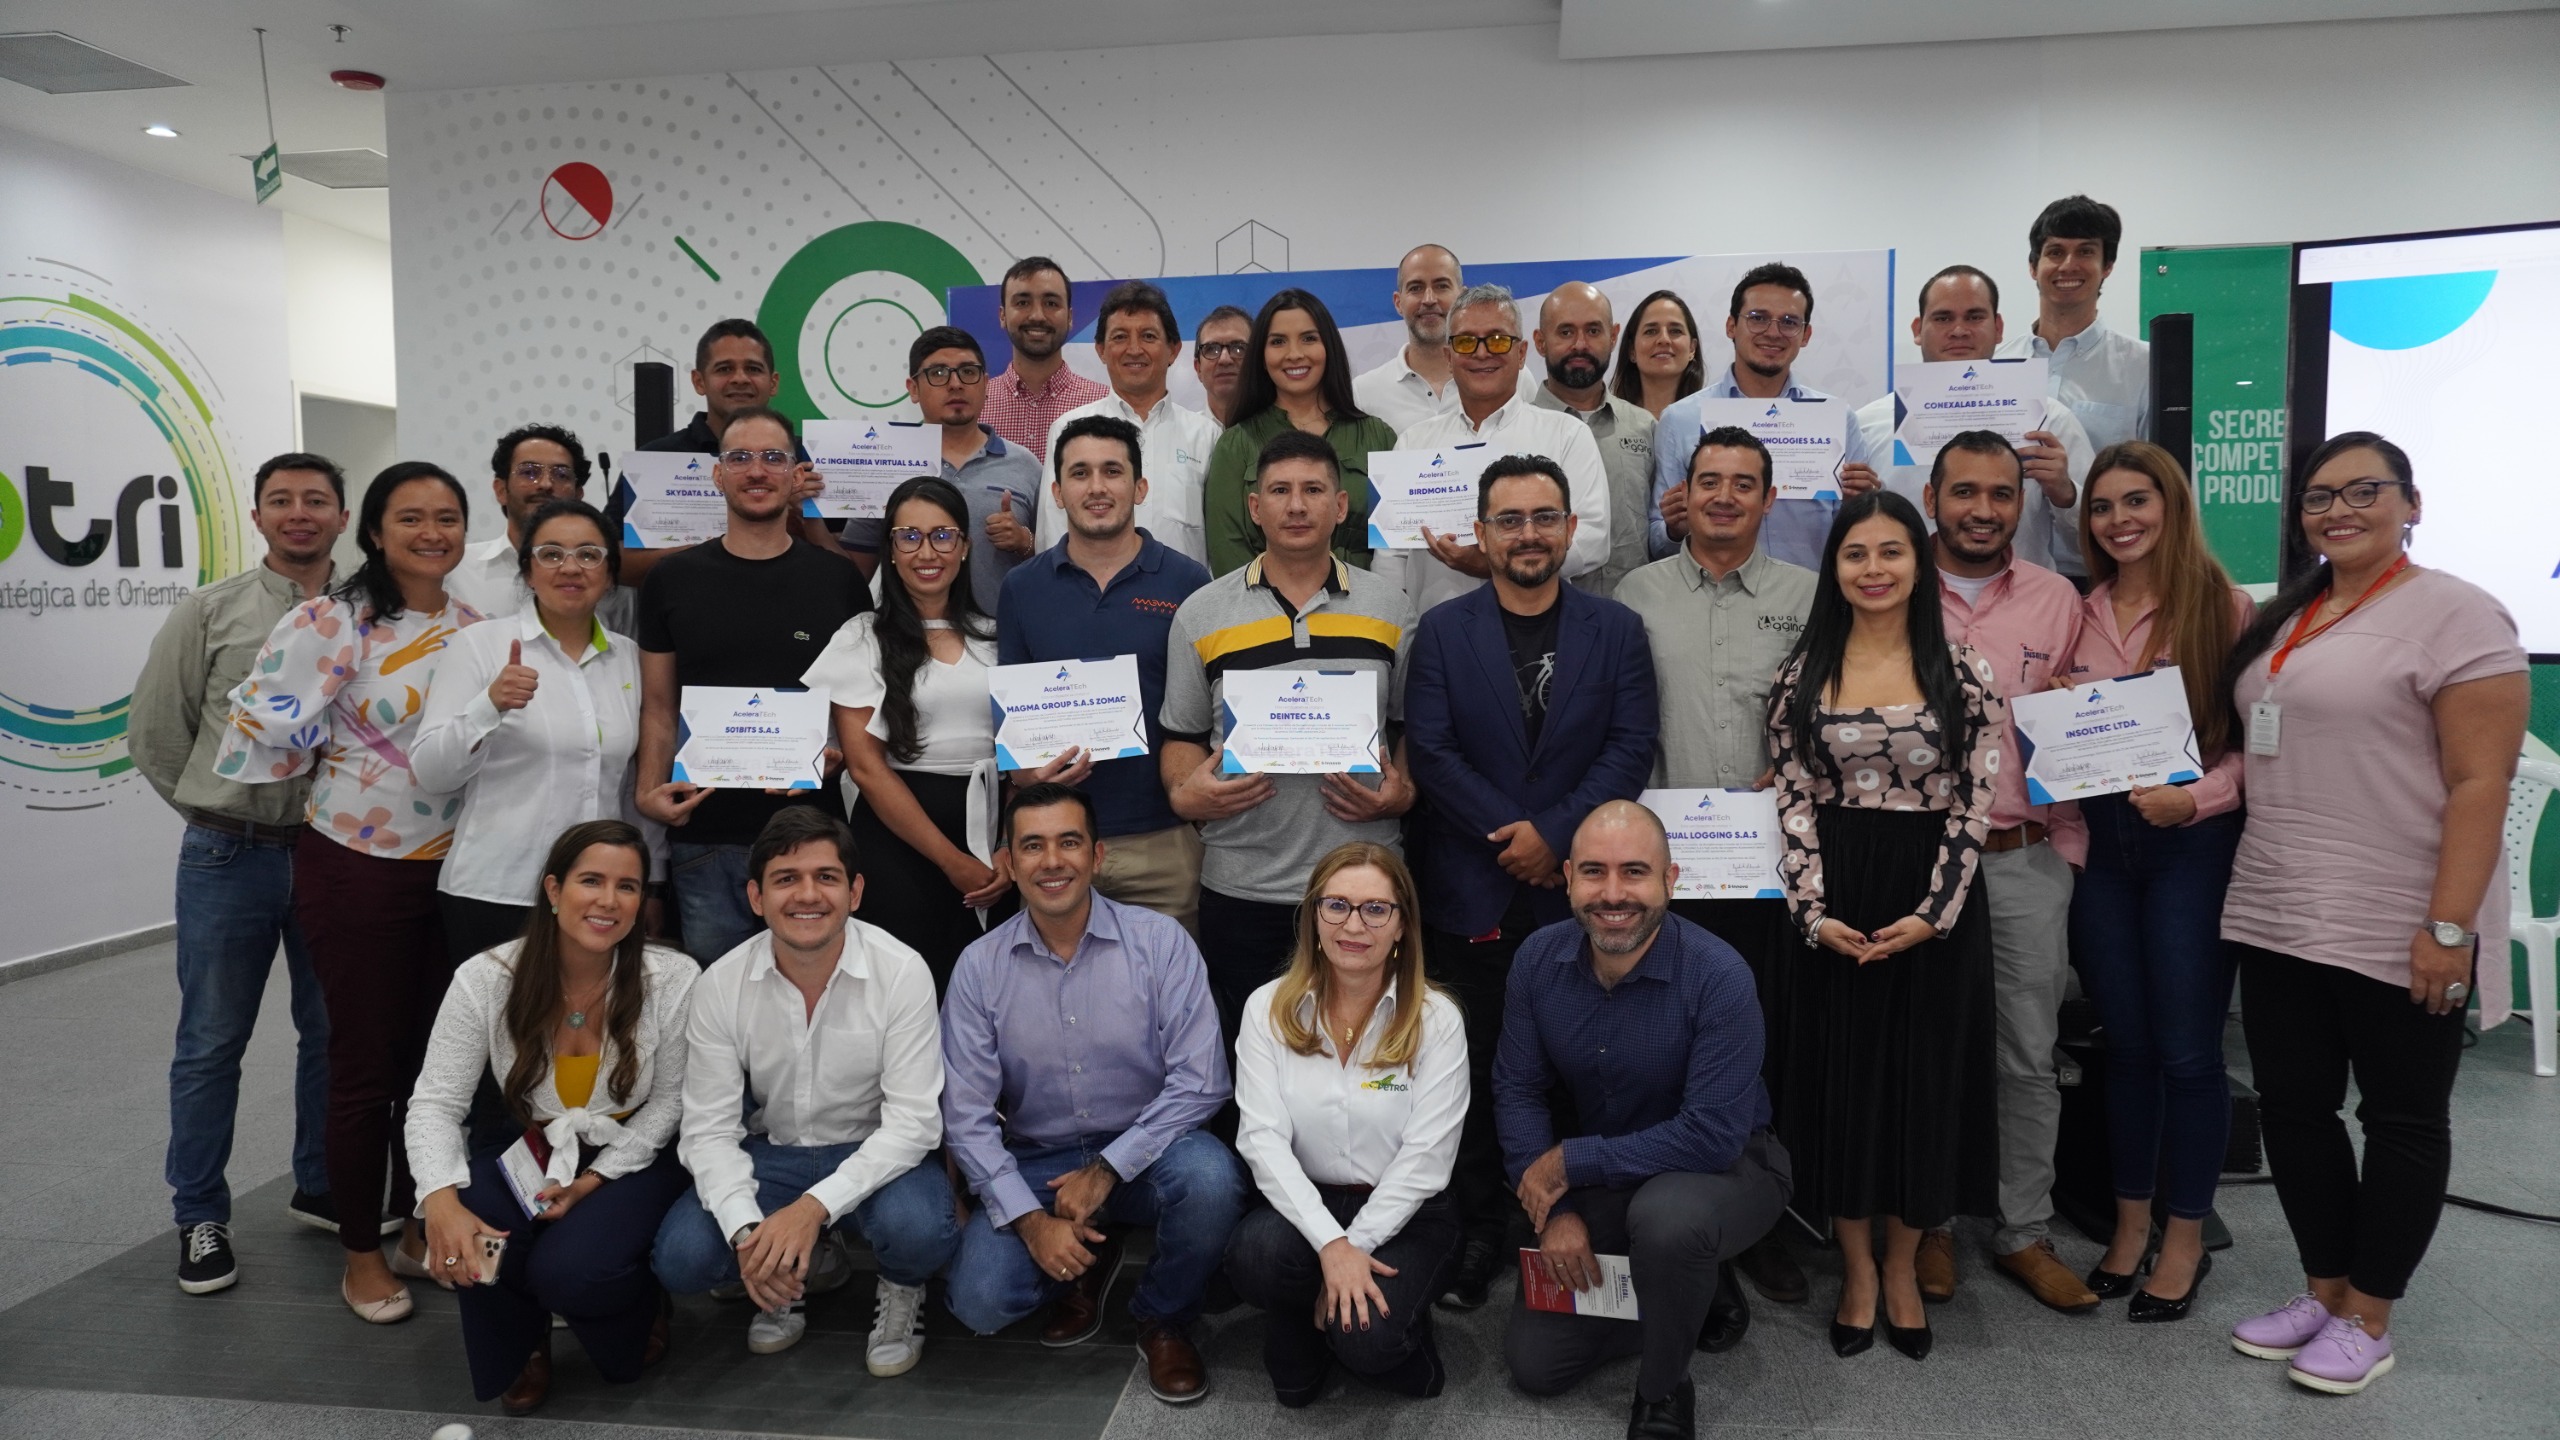 Bucaramanga se posiciona en el top 5 de ciudades líderes en creación de startups en Colombia